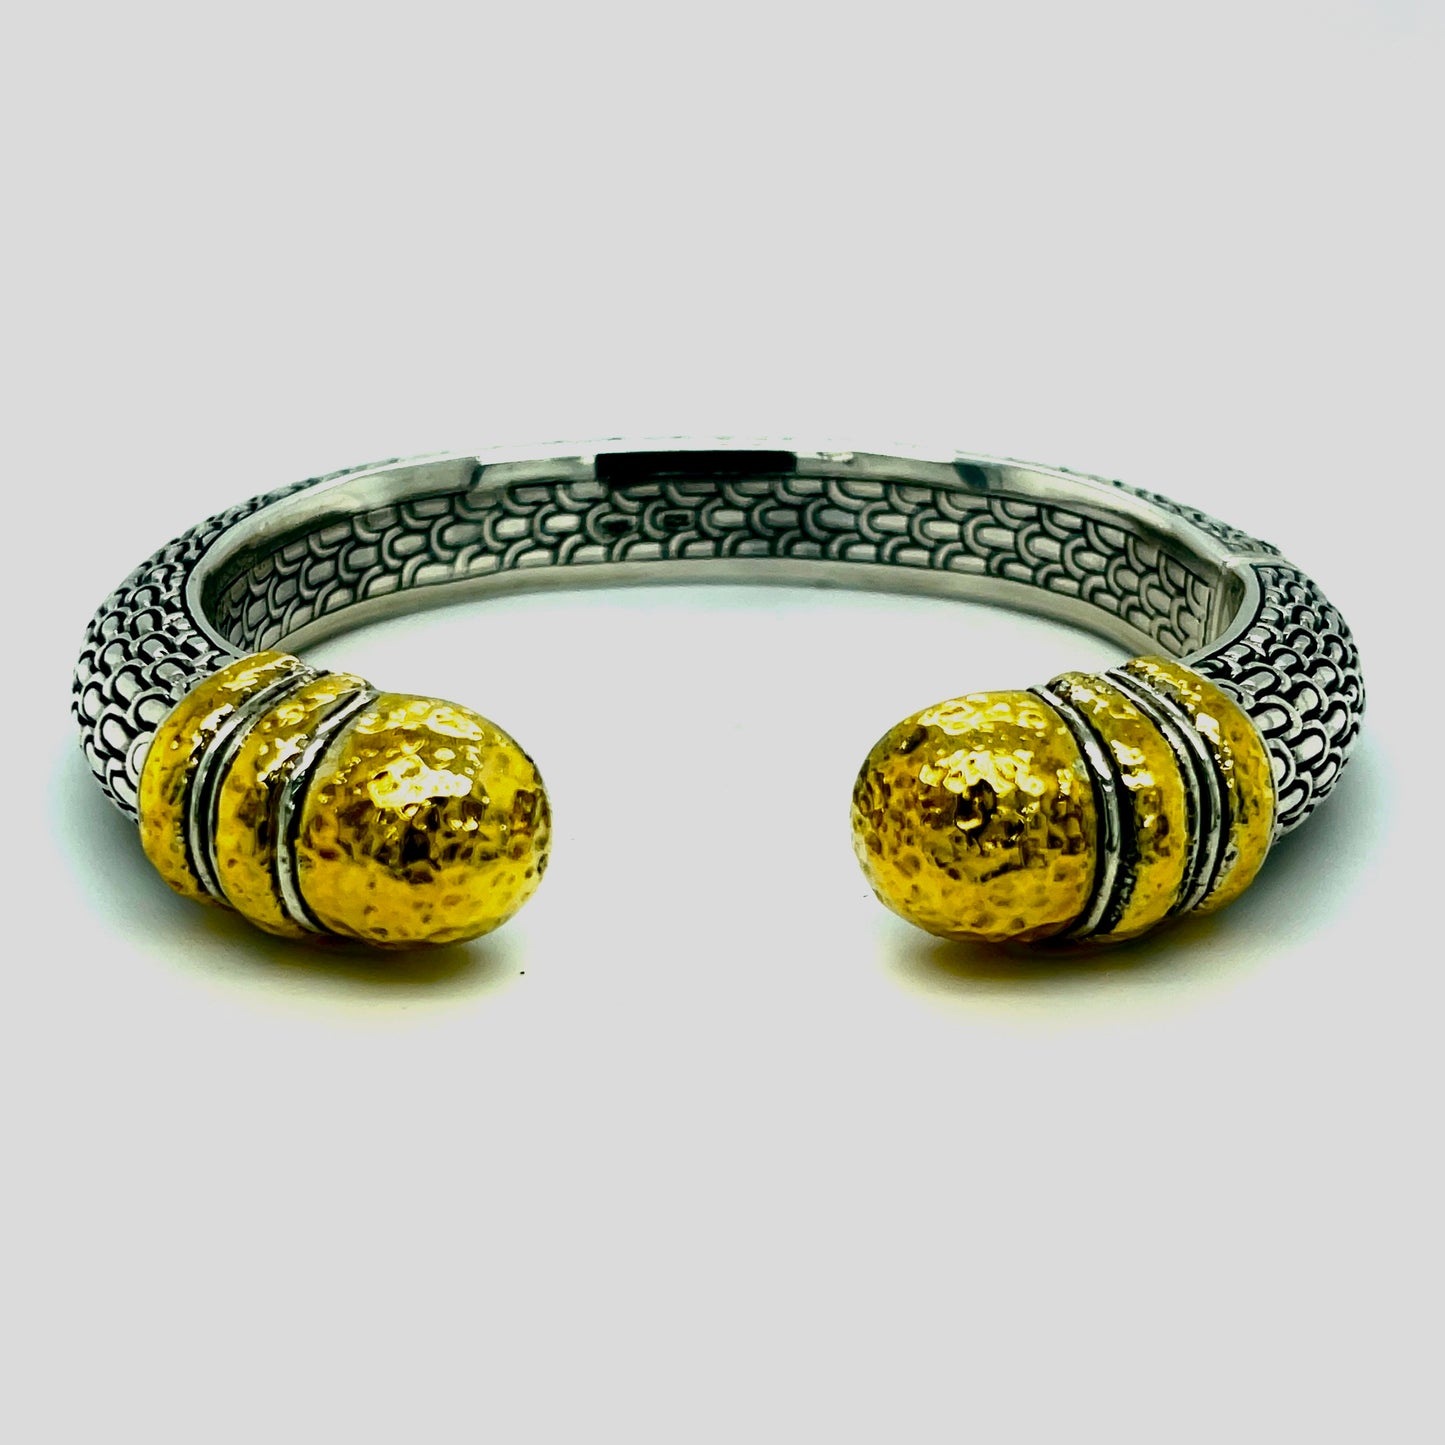 Silver and 18kt Gold bracelet